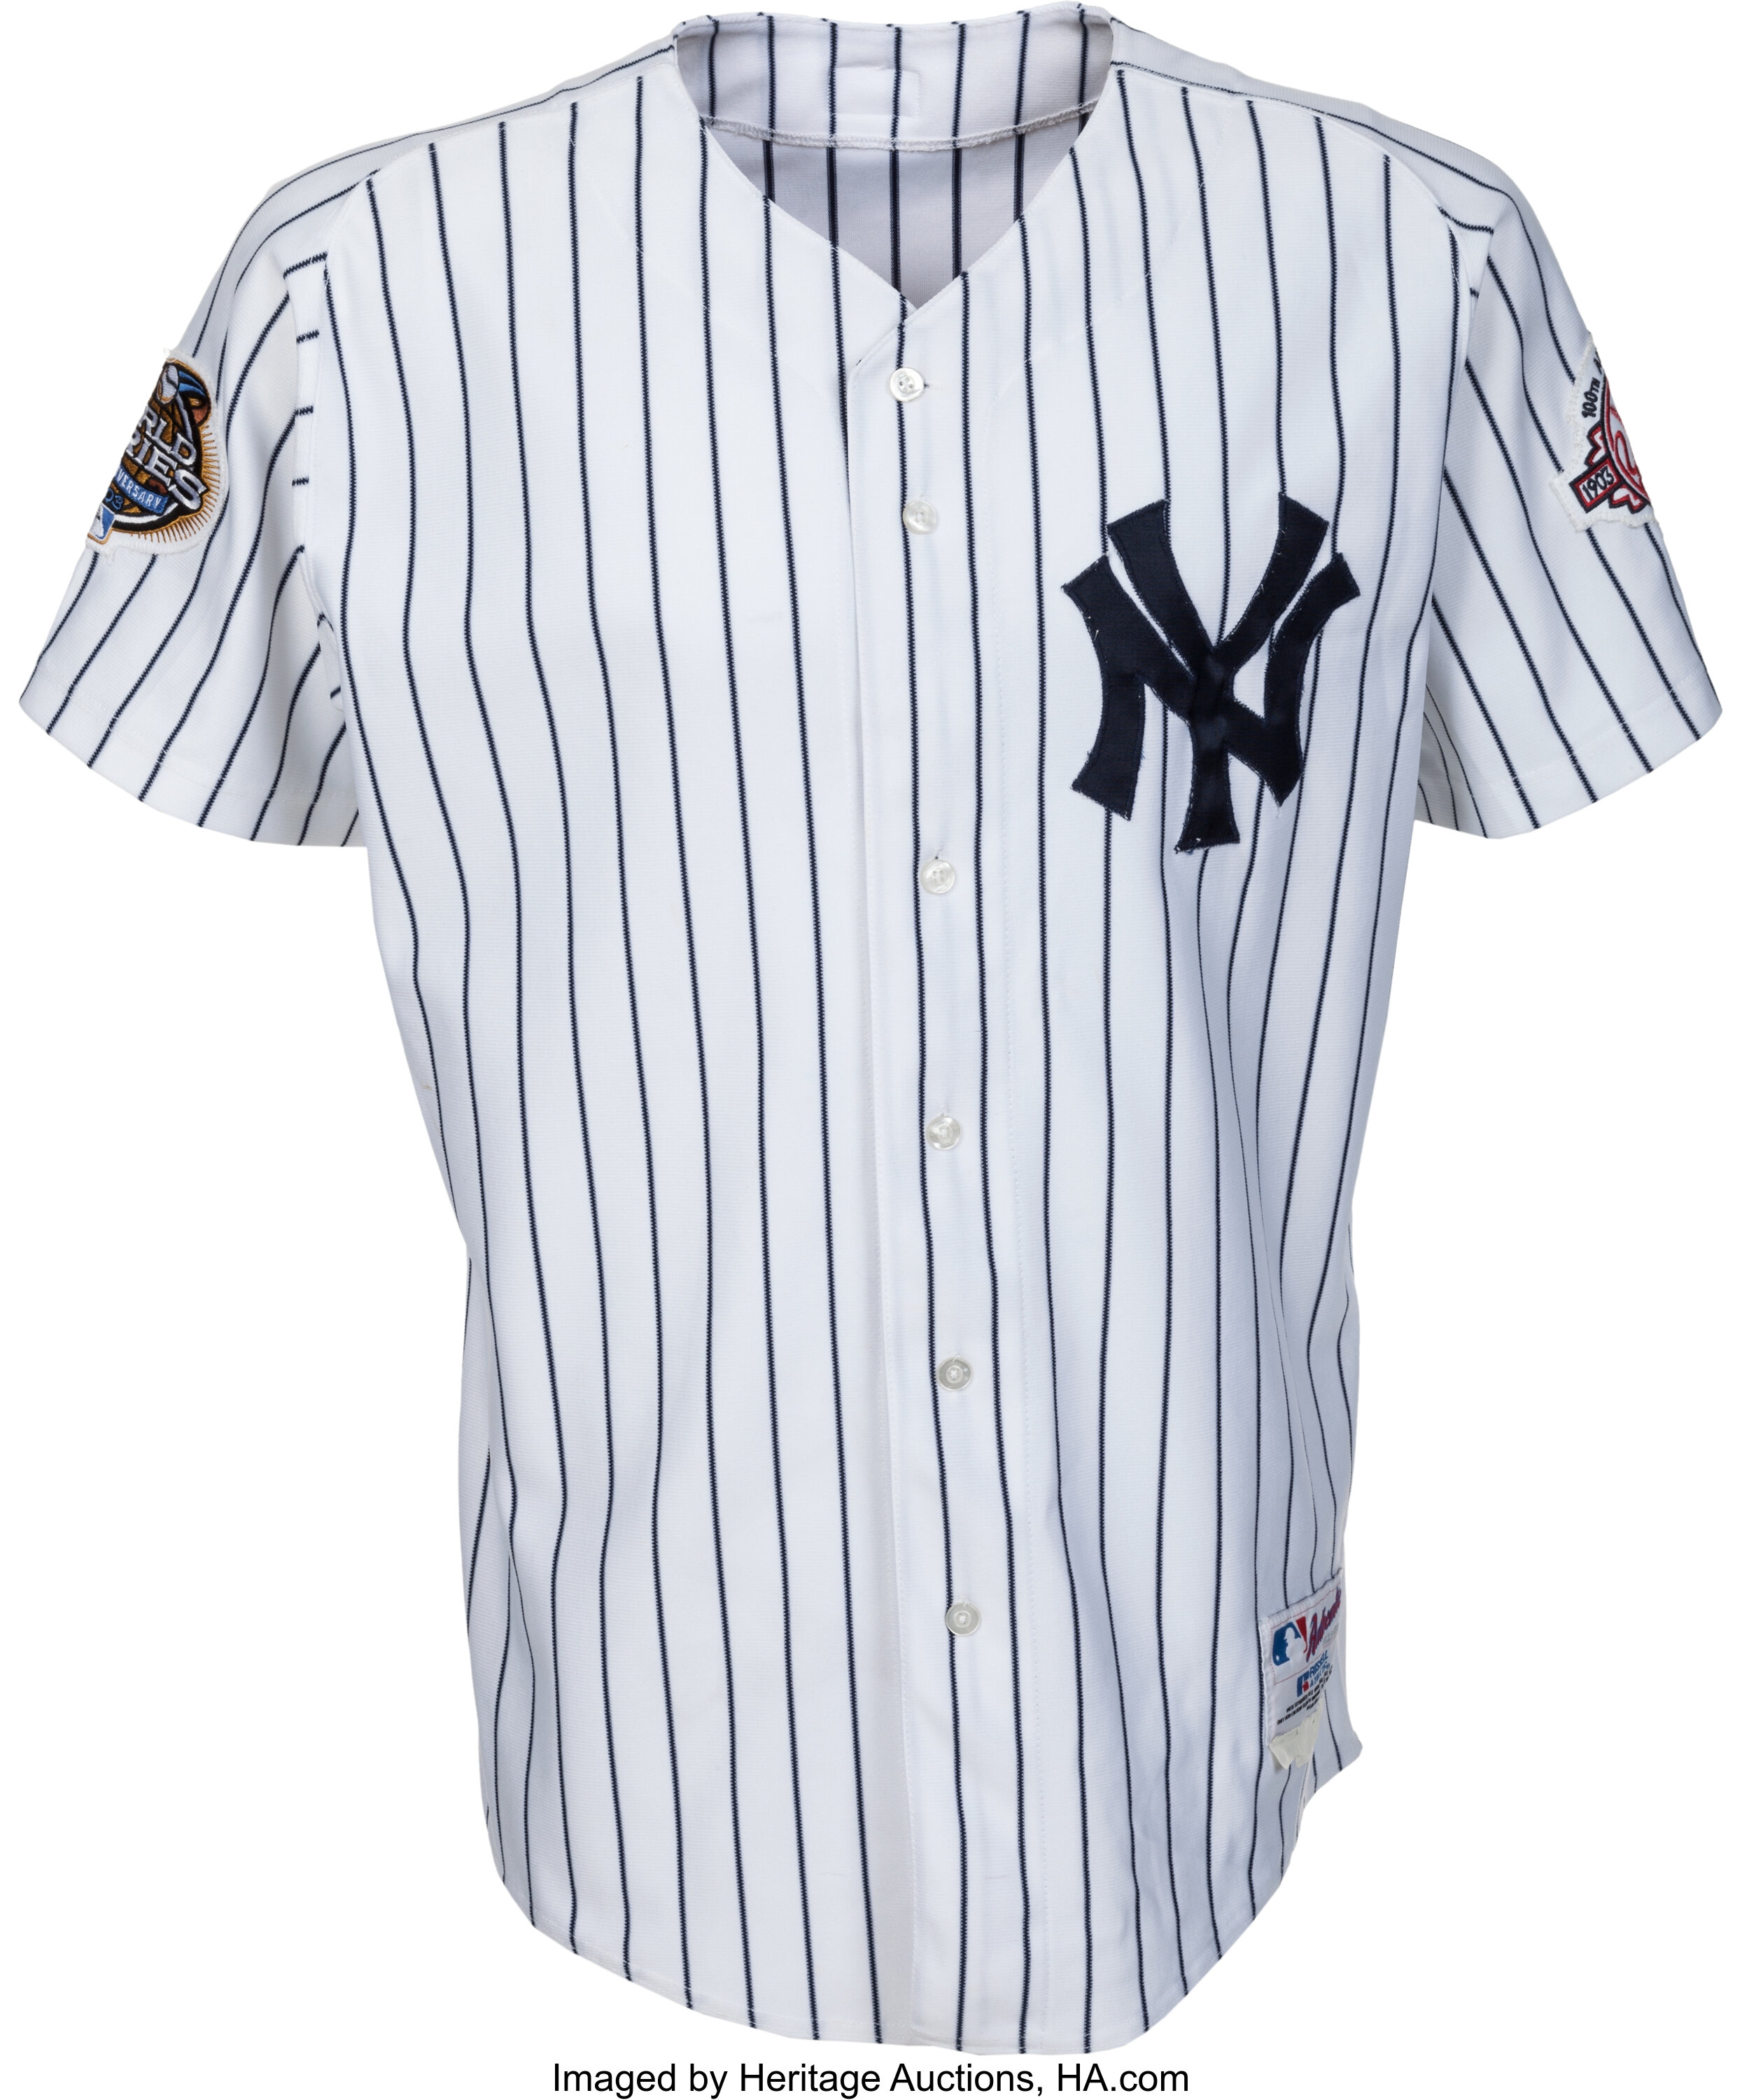 New York Yankees Derek Jeter Jersey – ROMAN